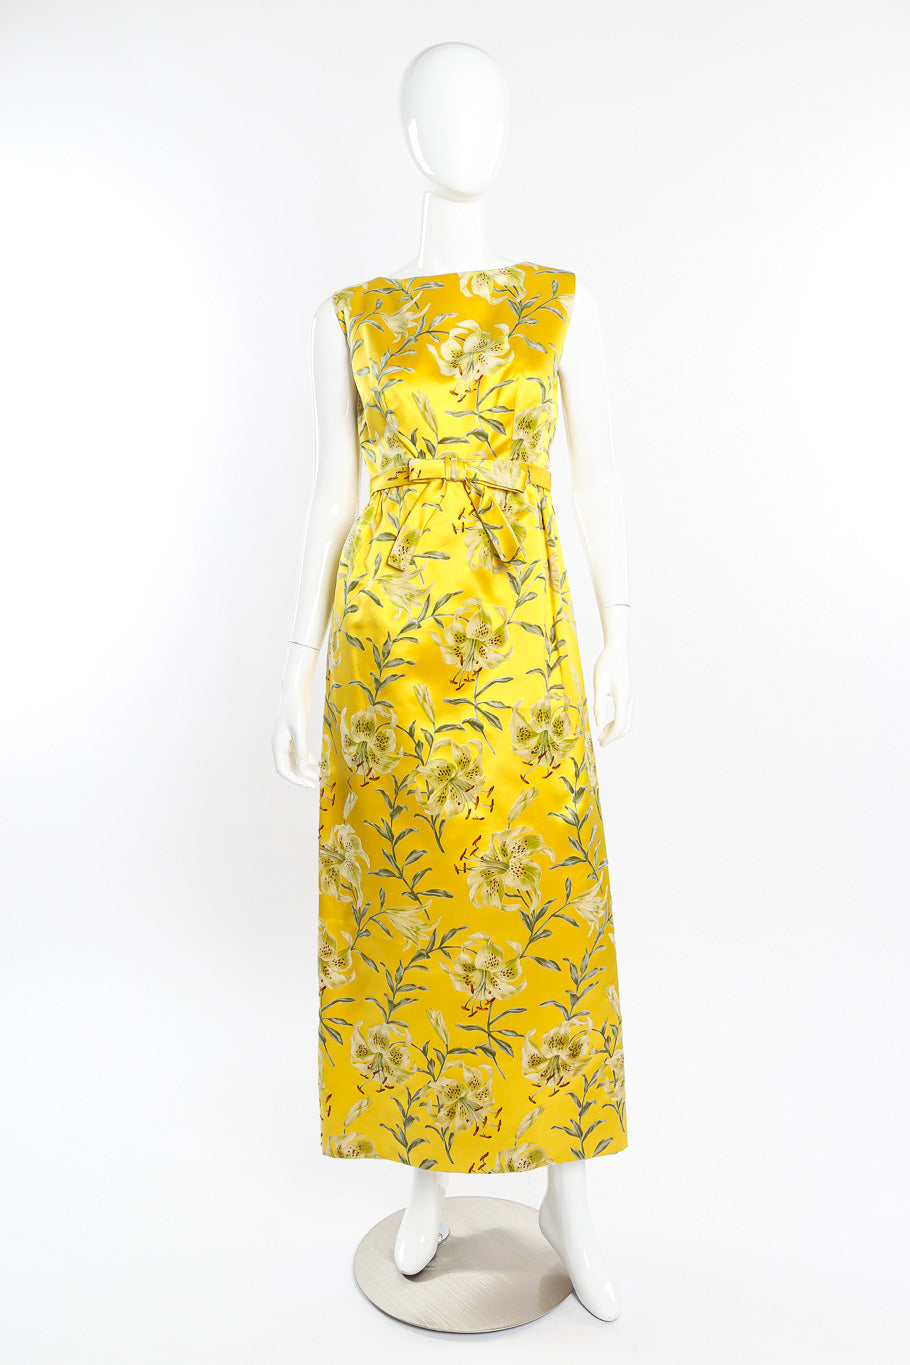 Velvet floral dress by Nat Kaplan on mannequin front @recessla